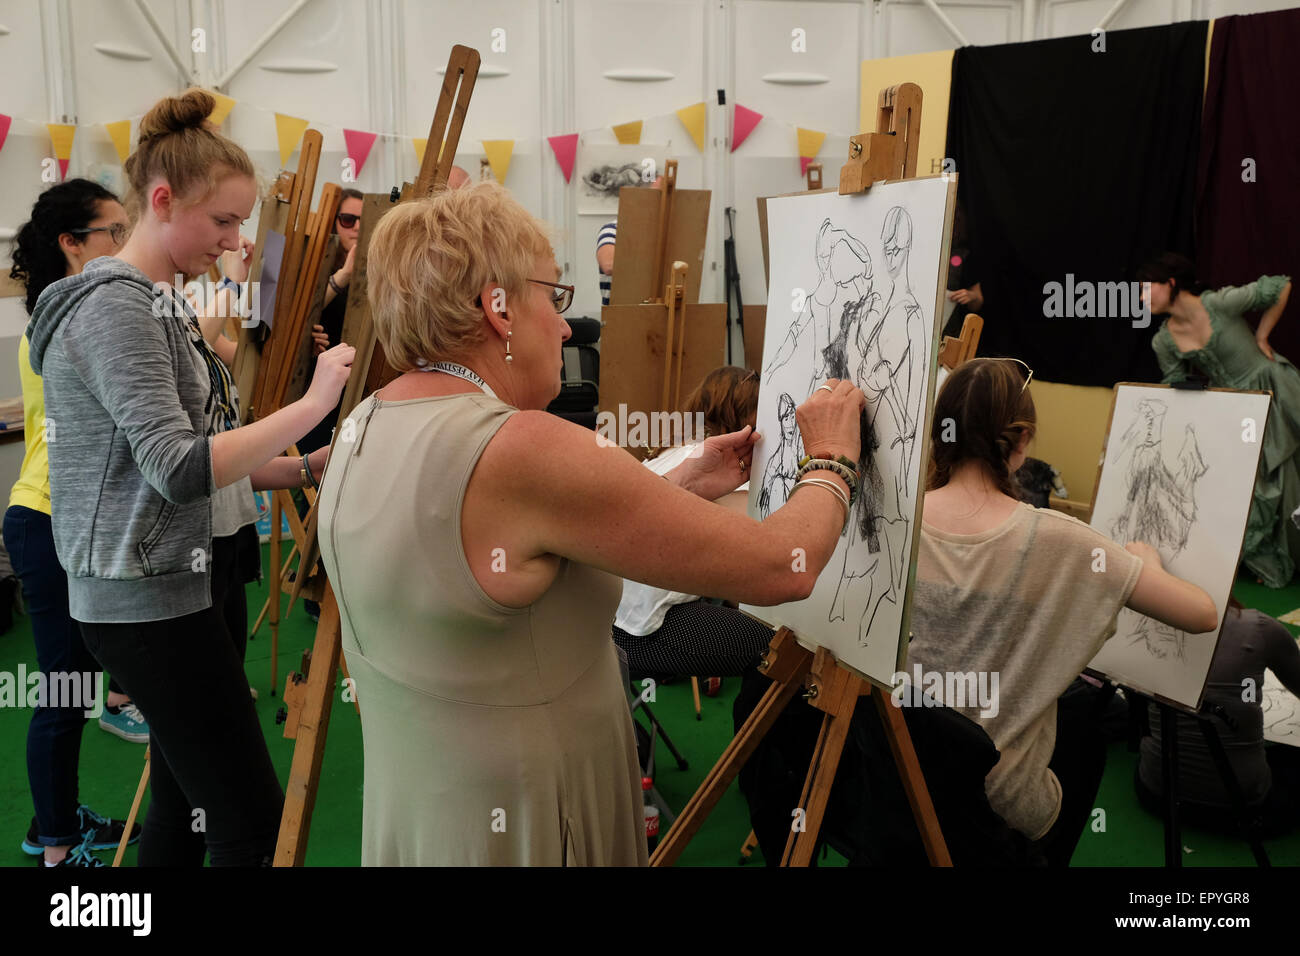 Hay-Festival, Powys, Wales - Mai 2015 - die königlichen Zeichenschule Kunst Zeichnung Sessions Workshops an der Hay Festival laufen. Stockfoto